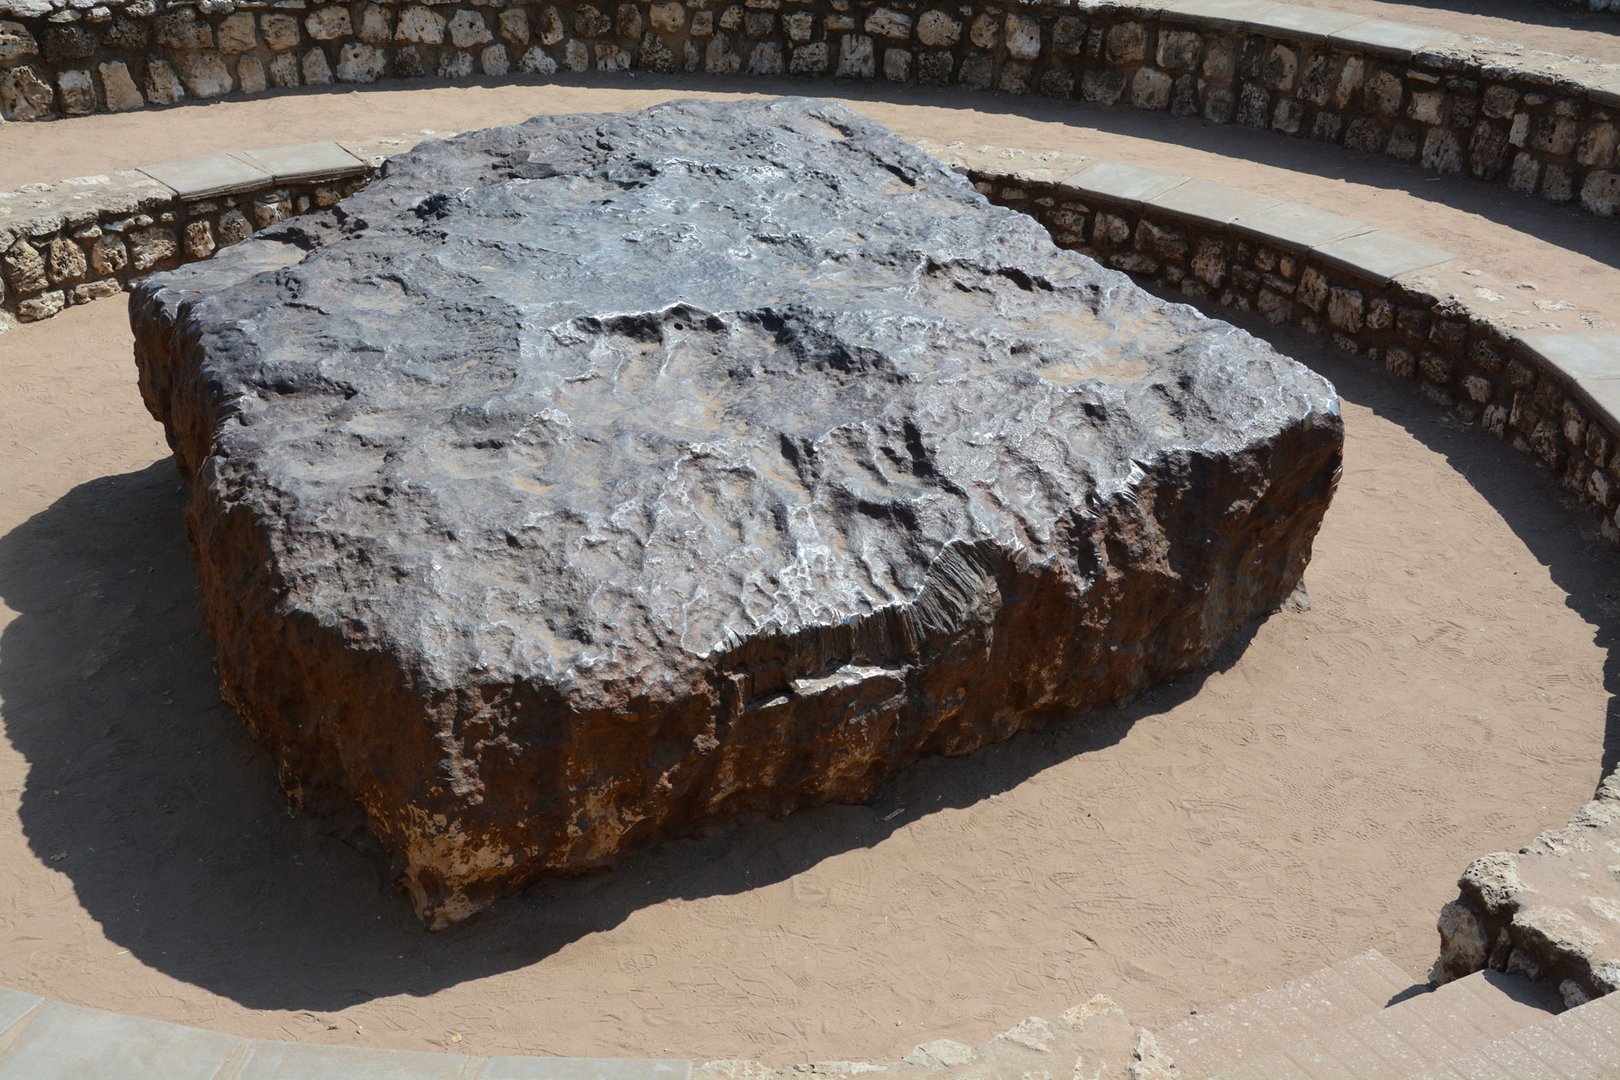 Der Hoba-Meteorit, der größte bisher auf der Erde entdeckte Meteorit